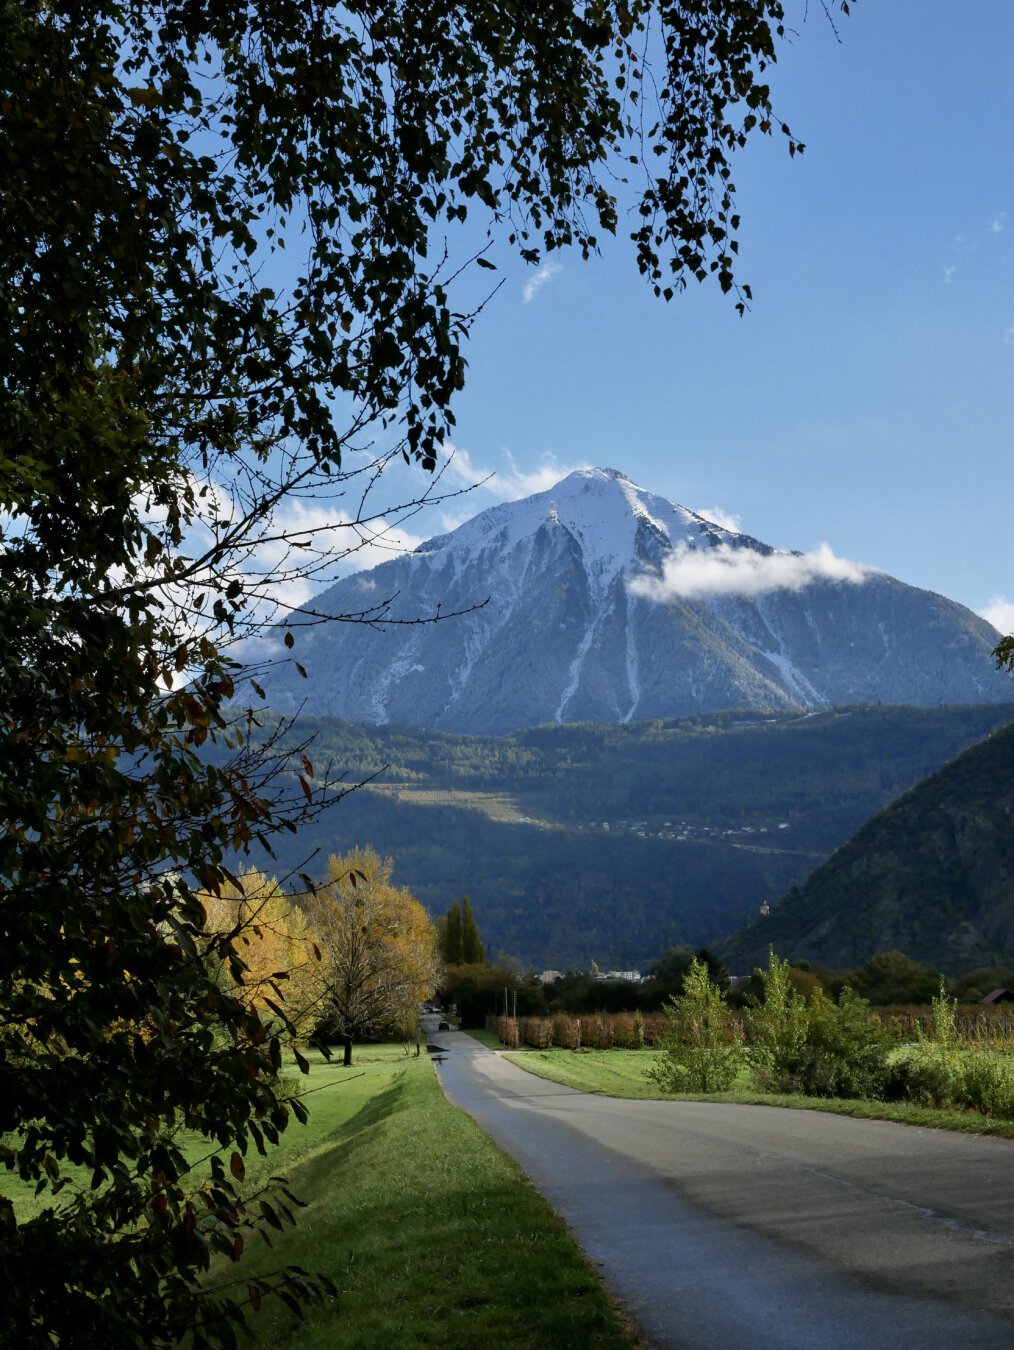 Route de campagne avec une montagne enneigée en arrière plan.